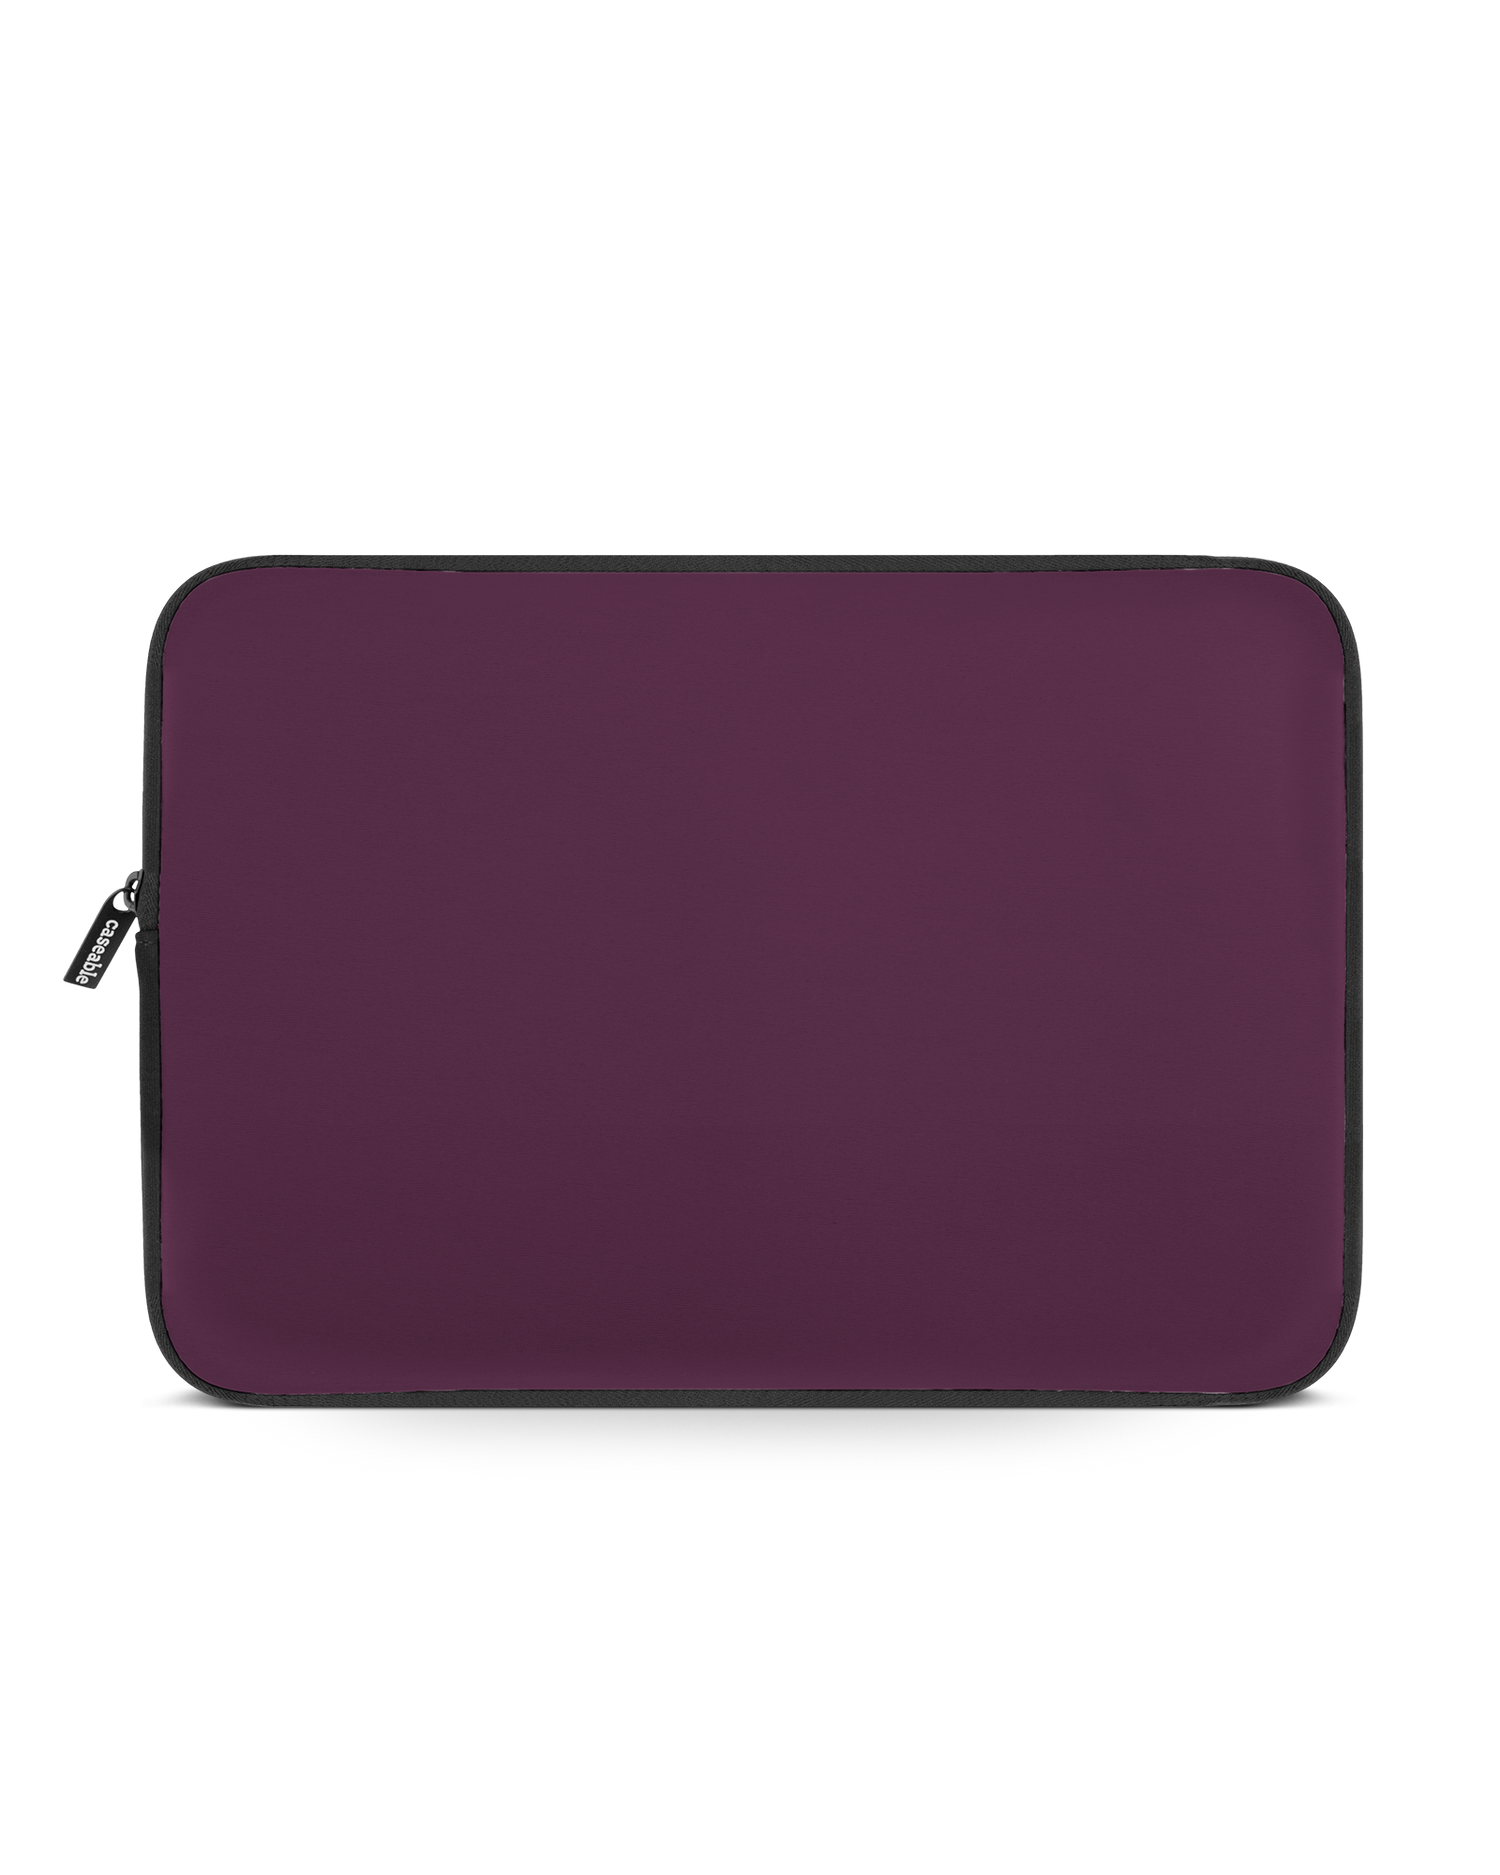 PLUM Laptop Case 14 inch: Front View